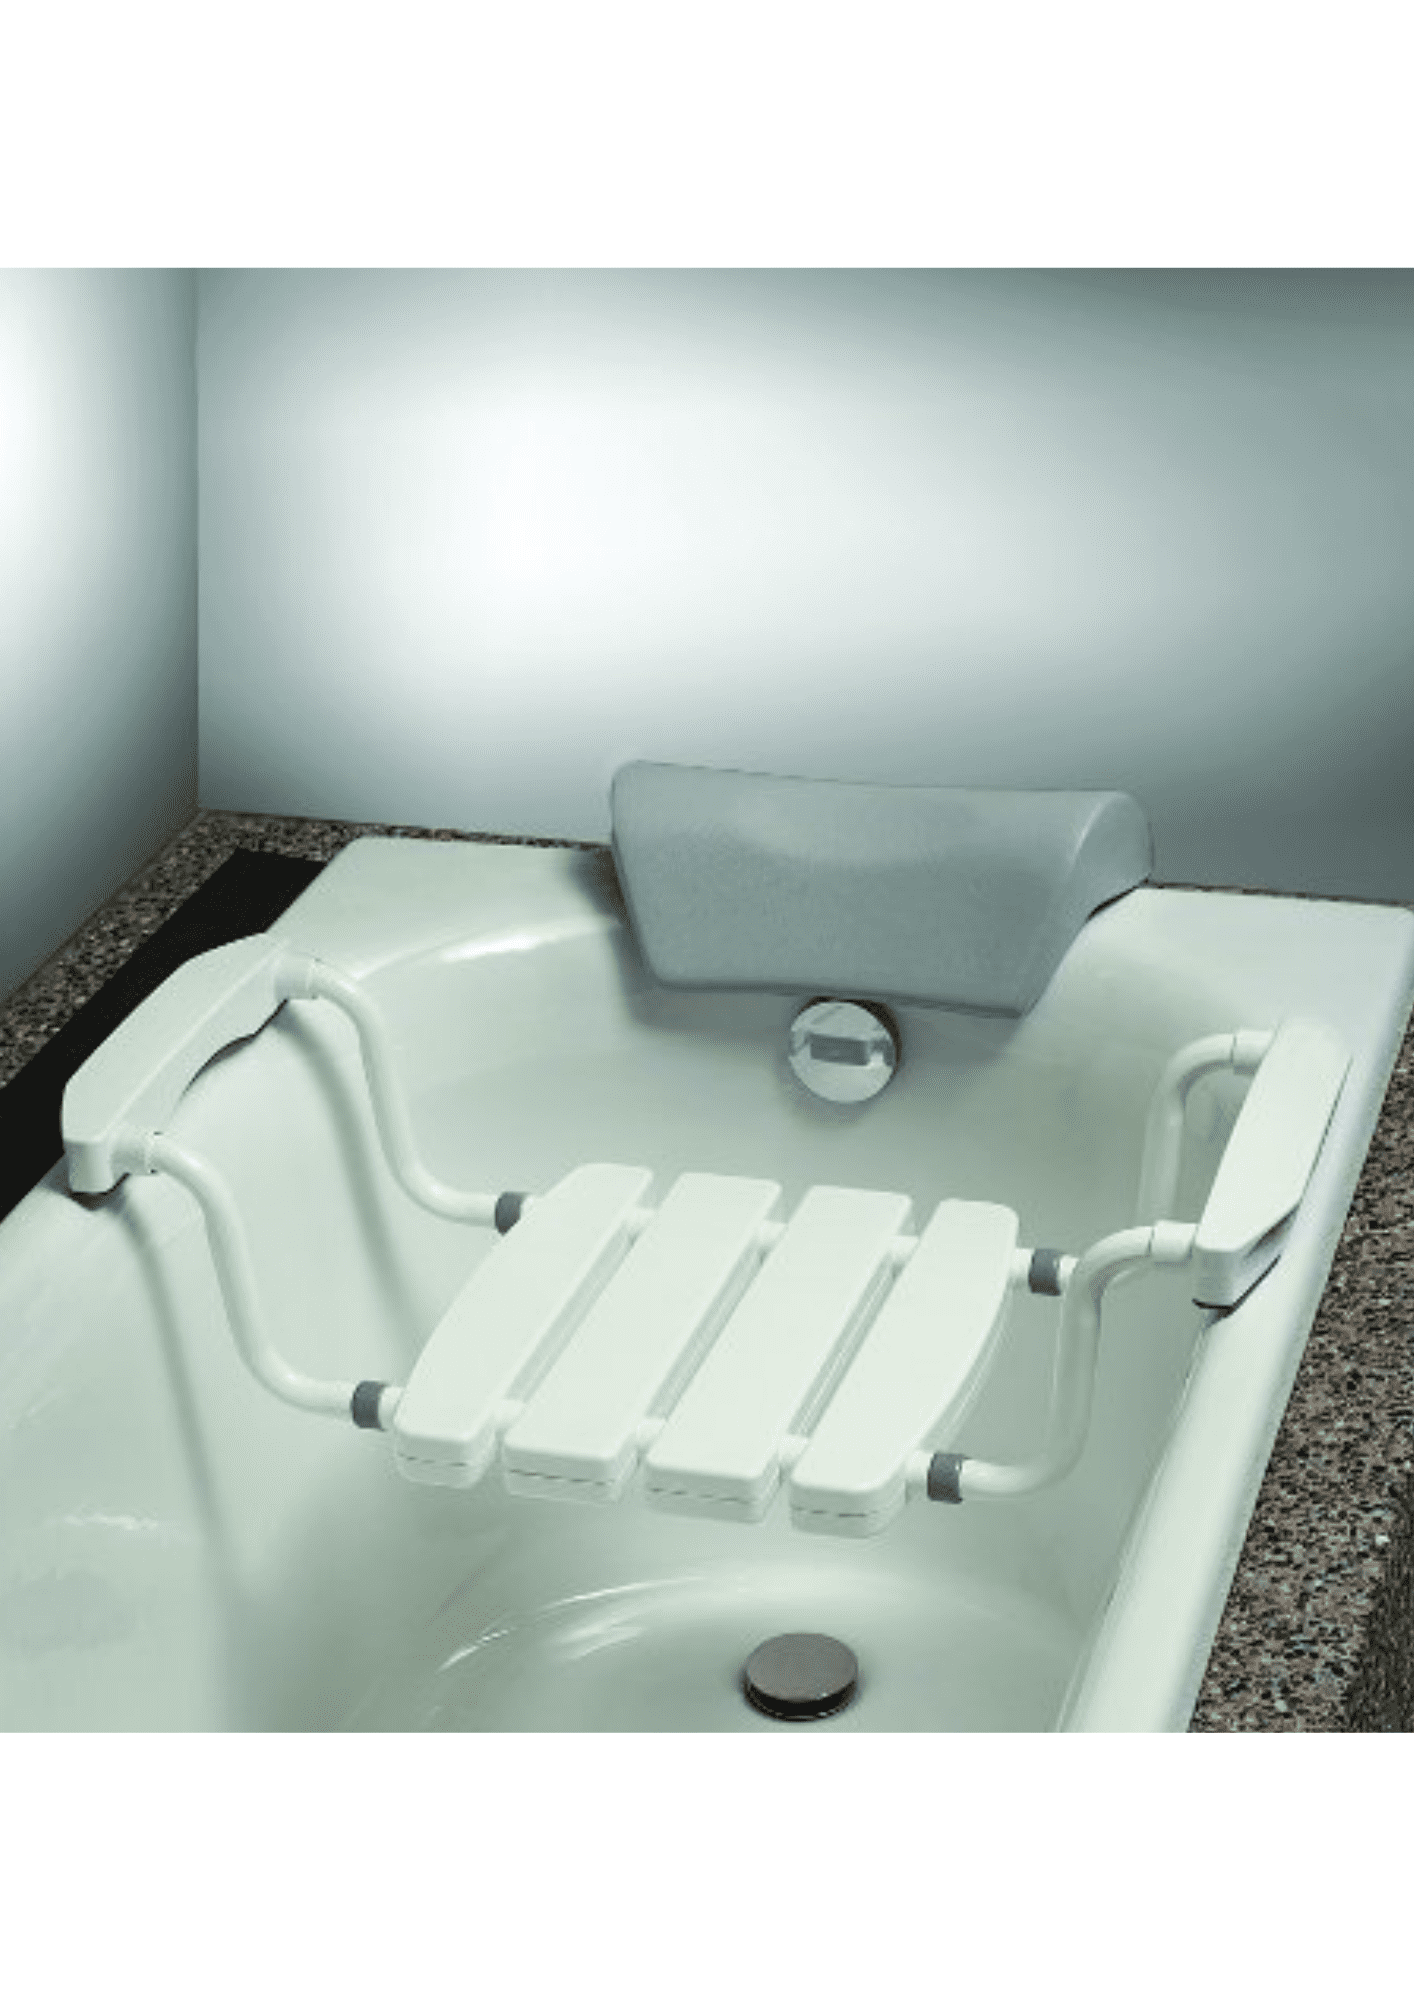 Asiento de aluminio para bañera. Antideslizante